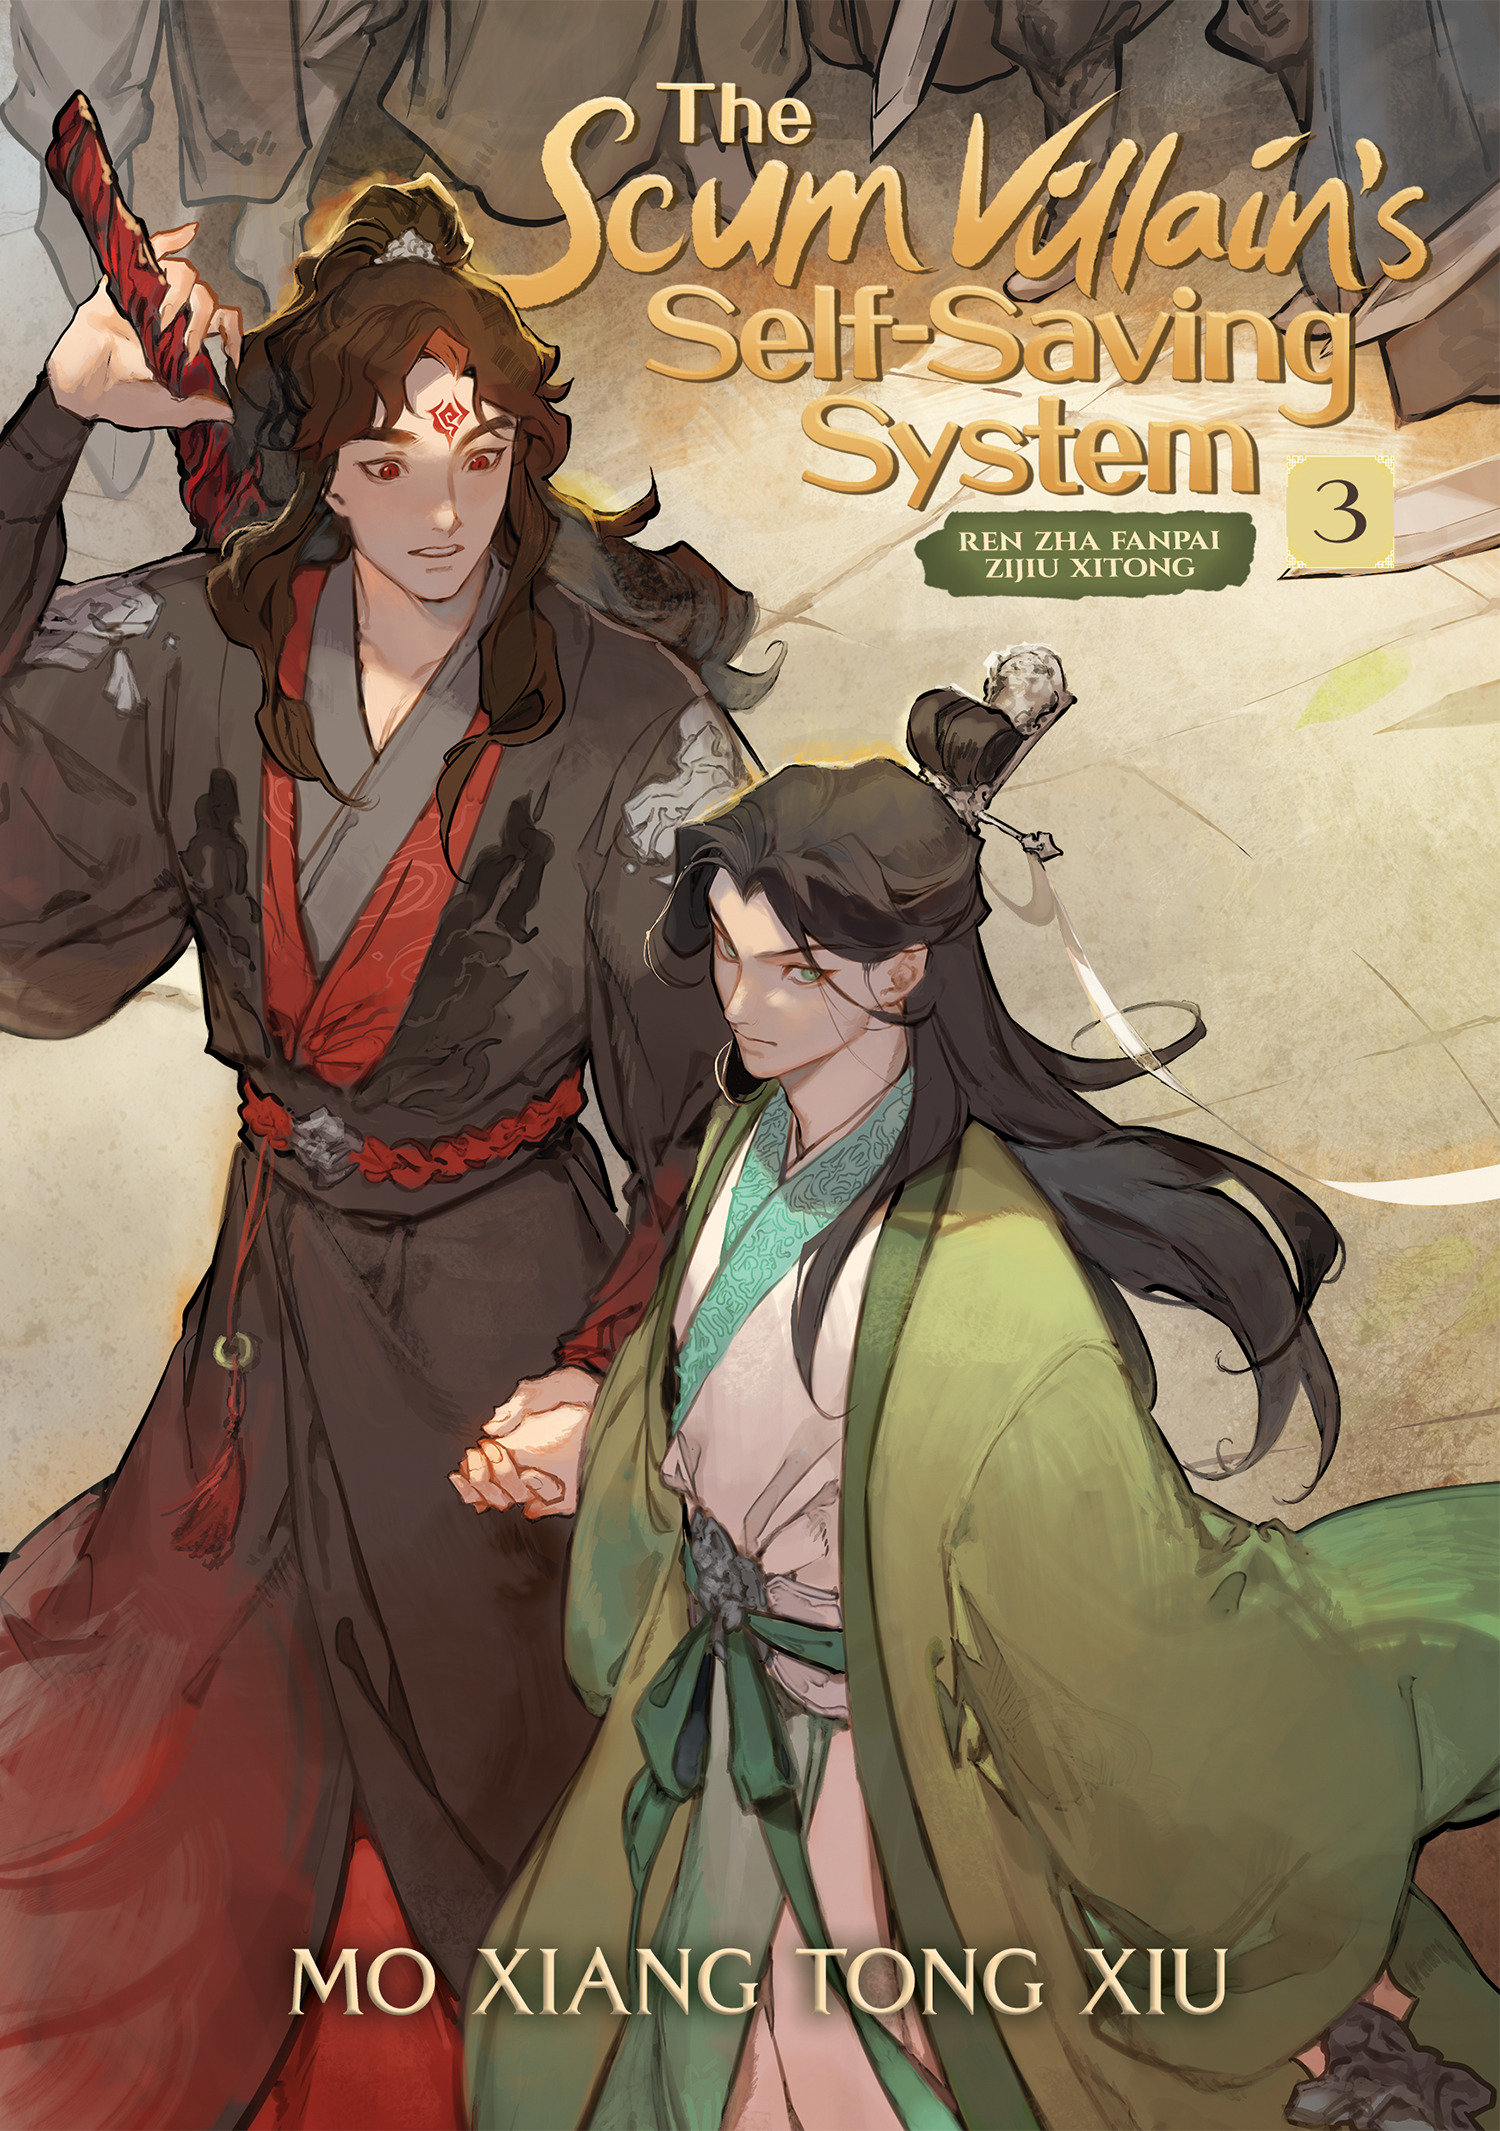 The Scum Villain's Self-Saving System Ren Zha Fanpai Zijiu Xitong (Novel) Volume 3